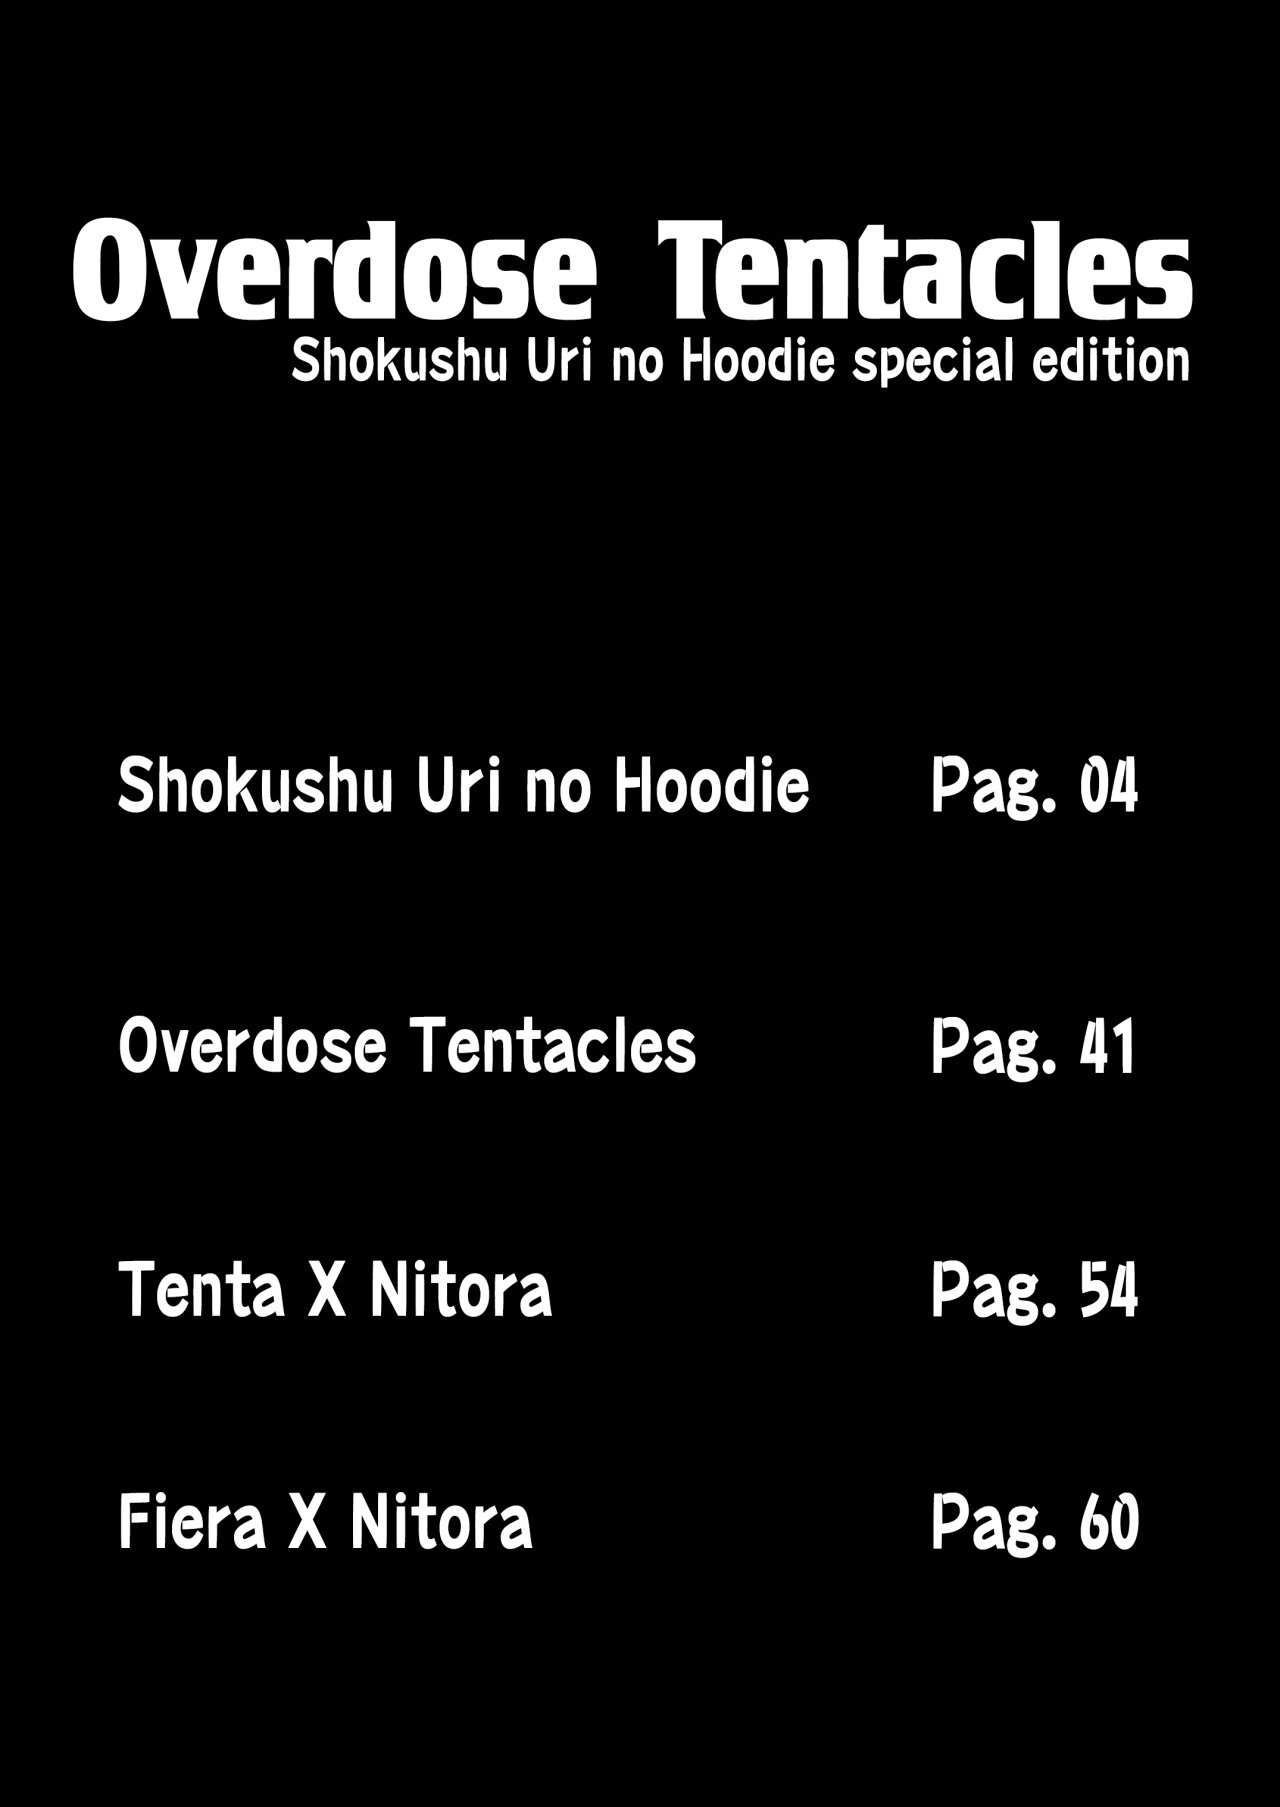 Overdose Tentacles Shokushu Uri no Hoodie Special Edition - 1